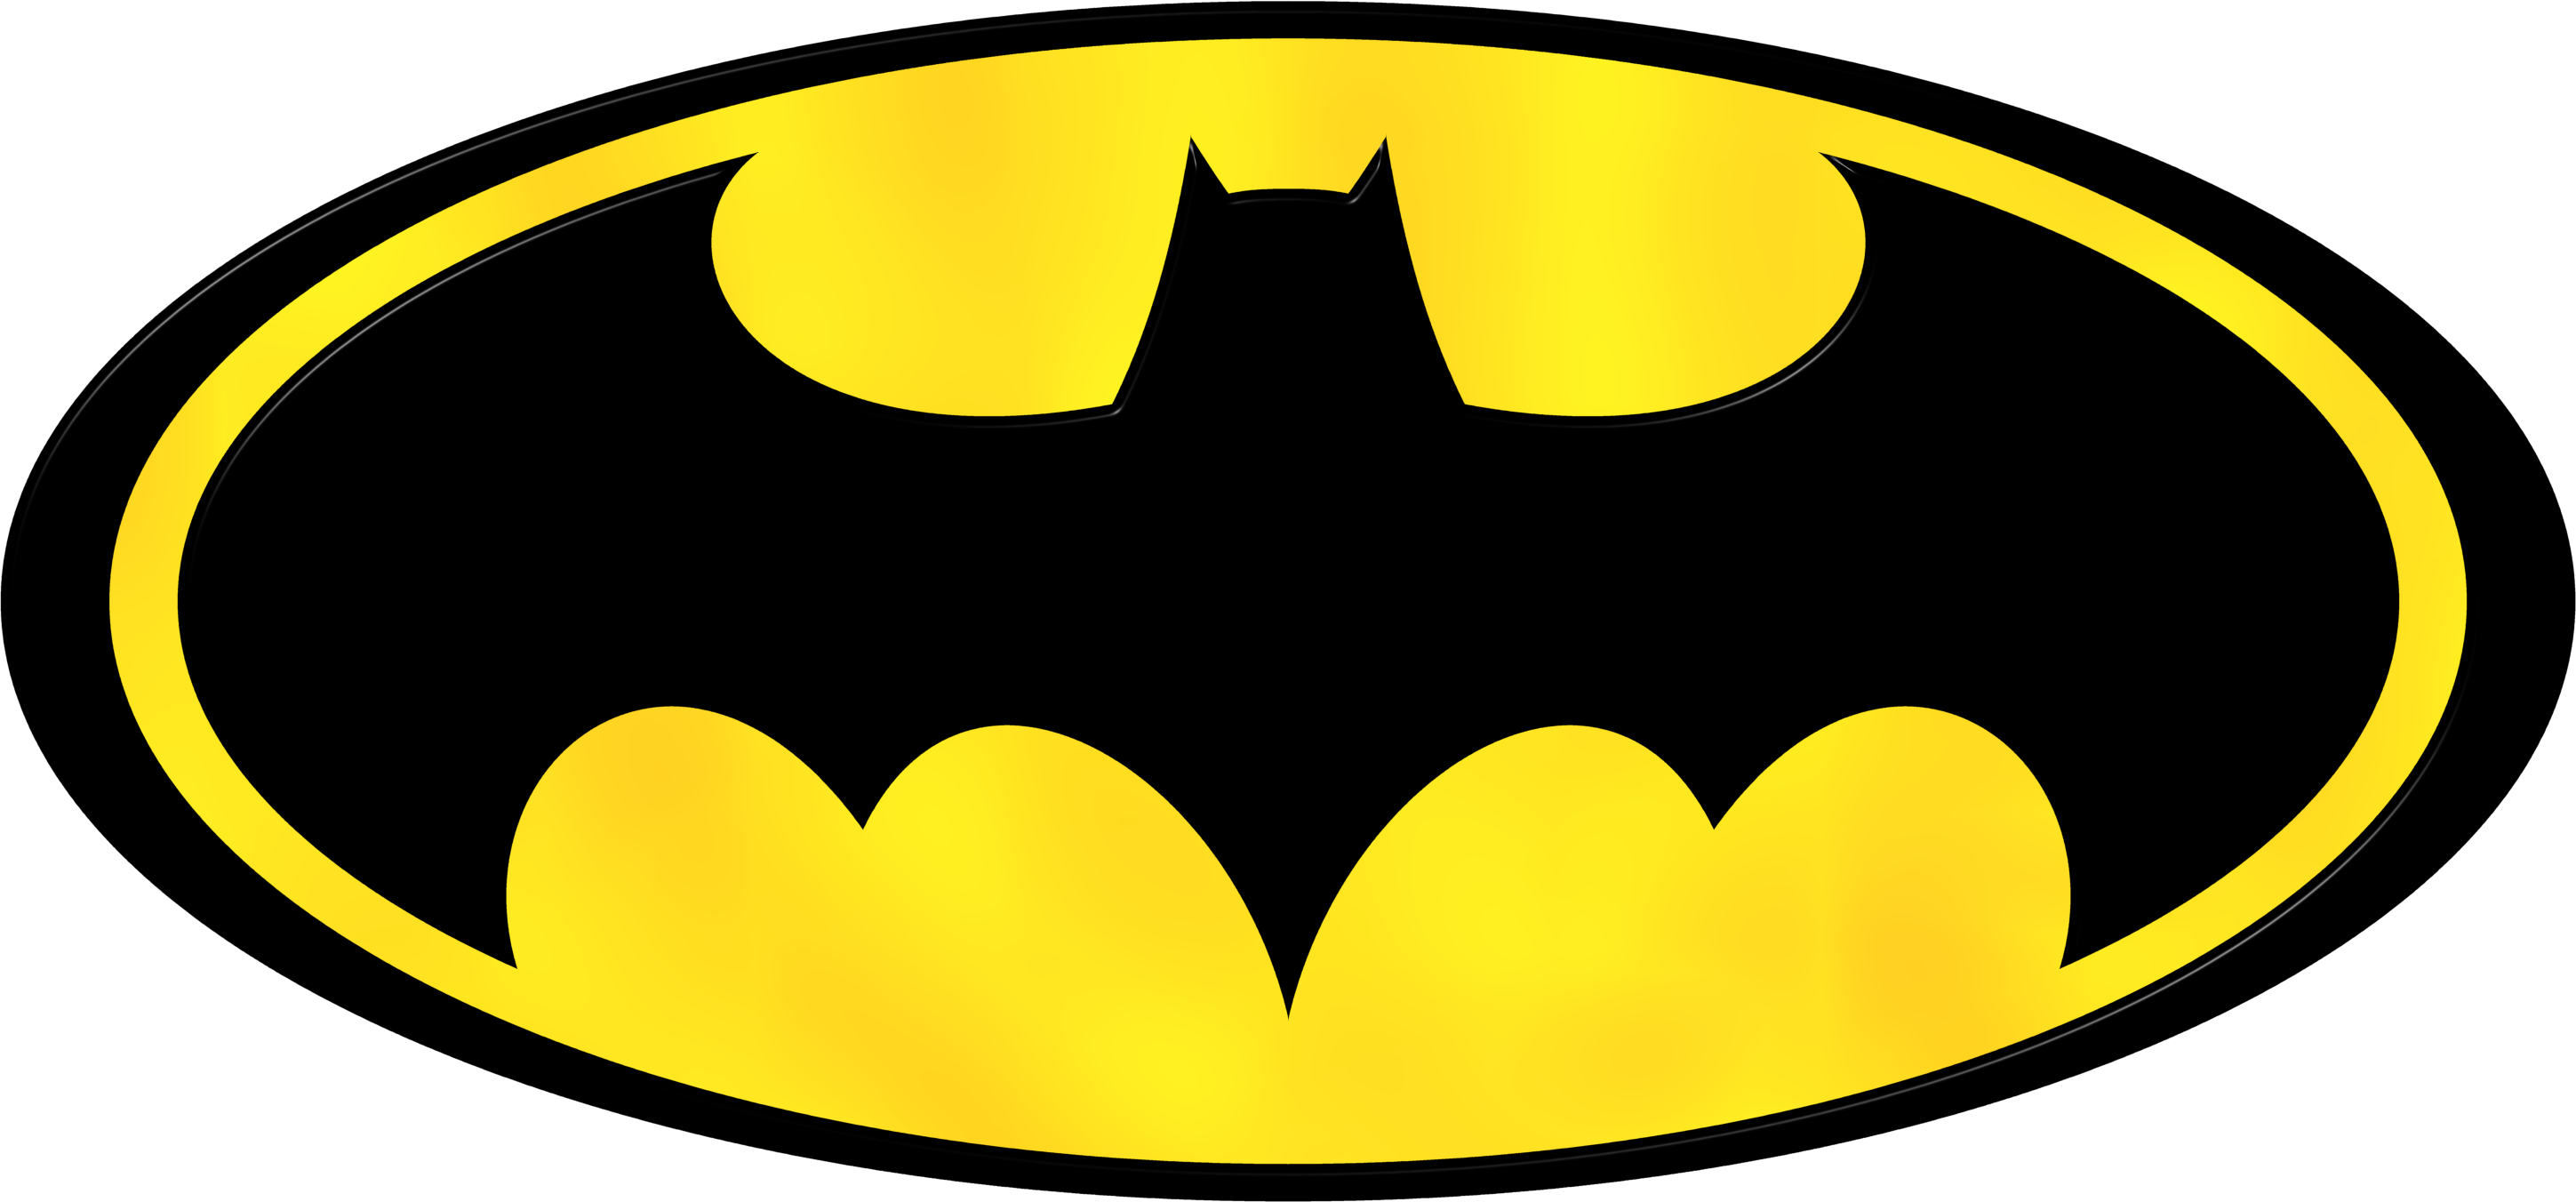 Clipart of batman logo